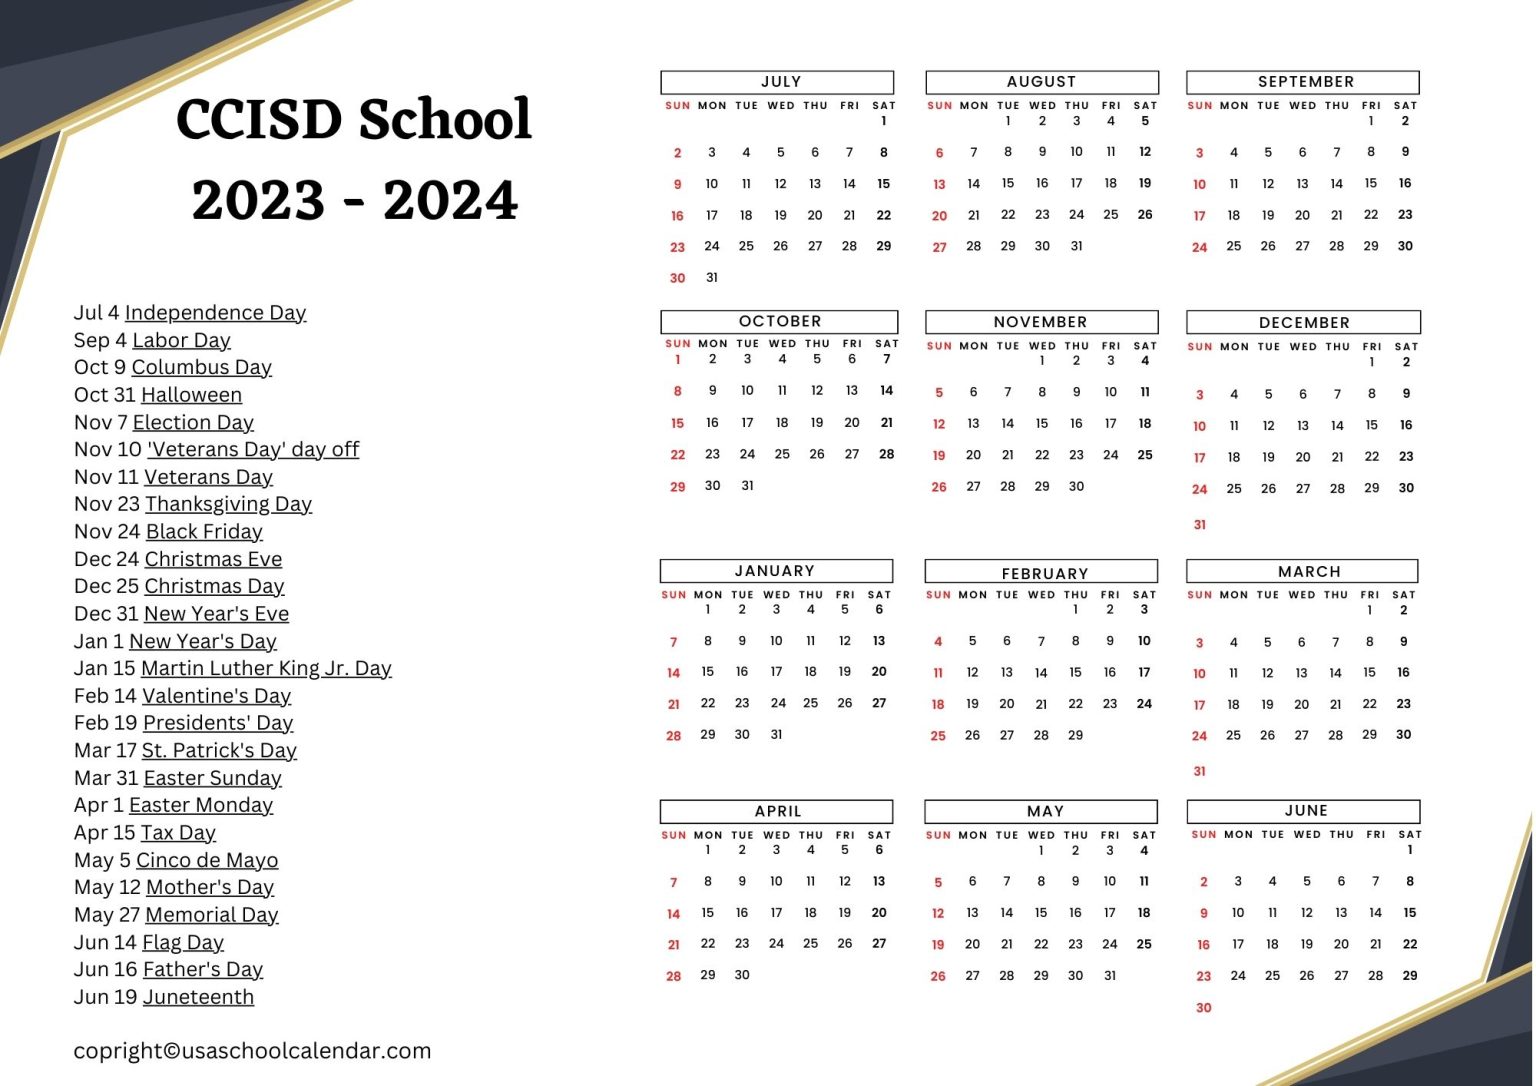 CCISD School Calendar Holidays 2023 2024 Clear Creek ISD 